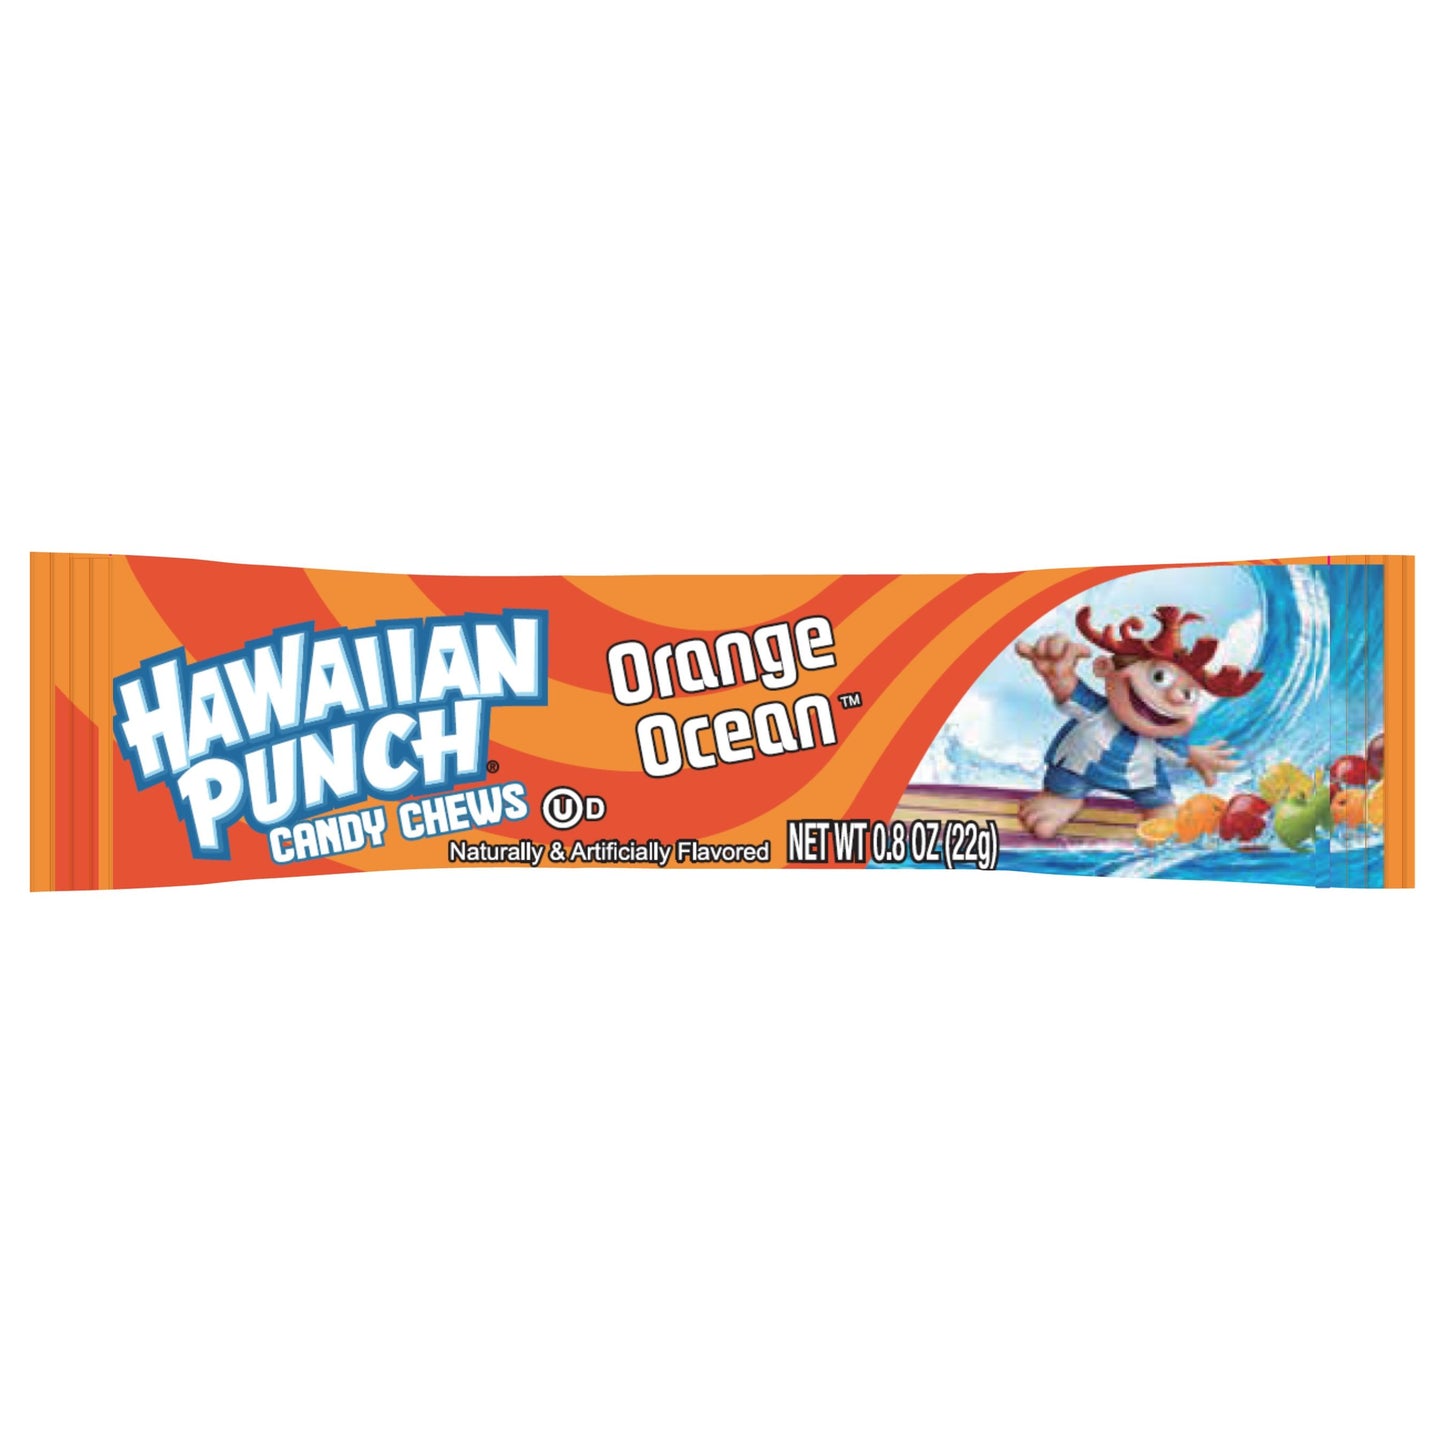 Hawaiian Punch Chews Ocean Orange 0.8oz 36ct